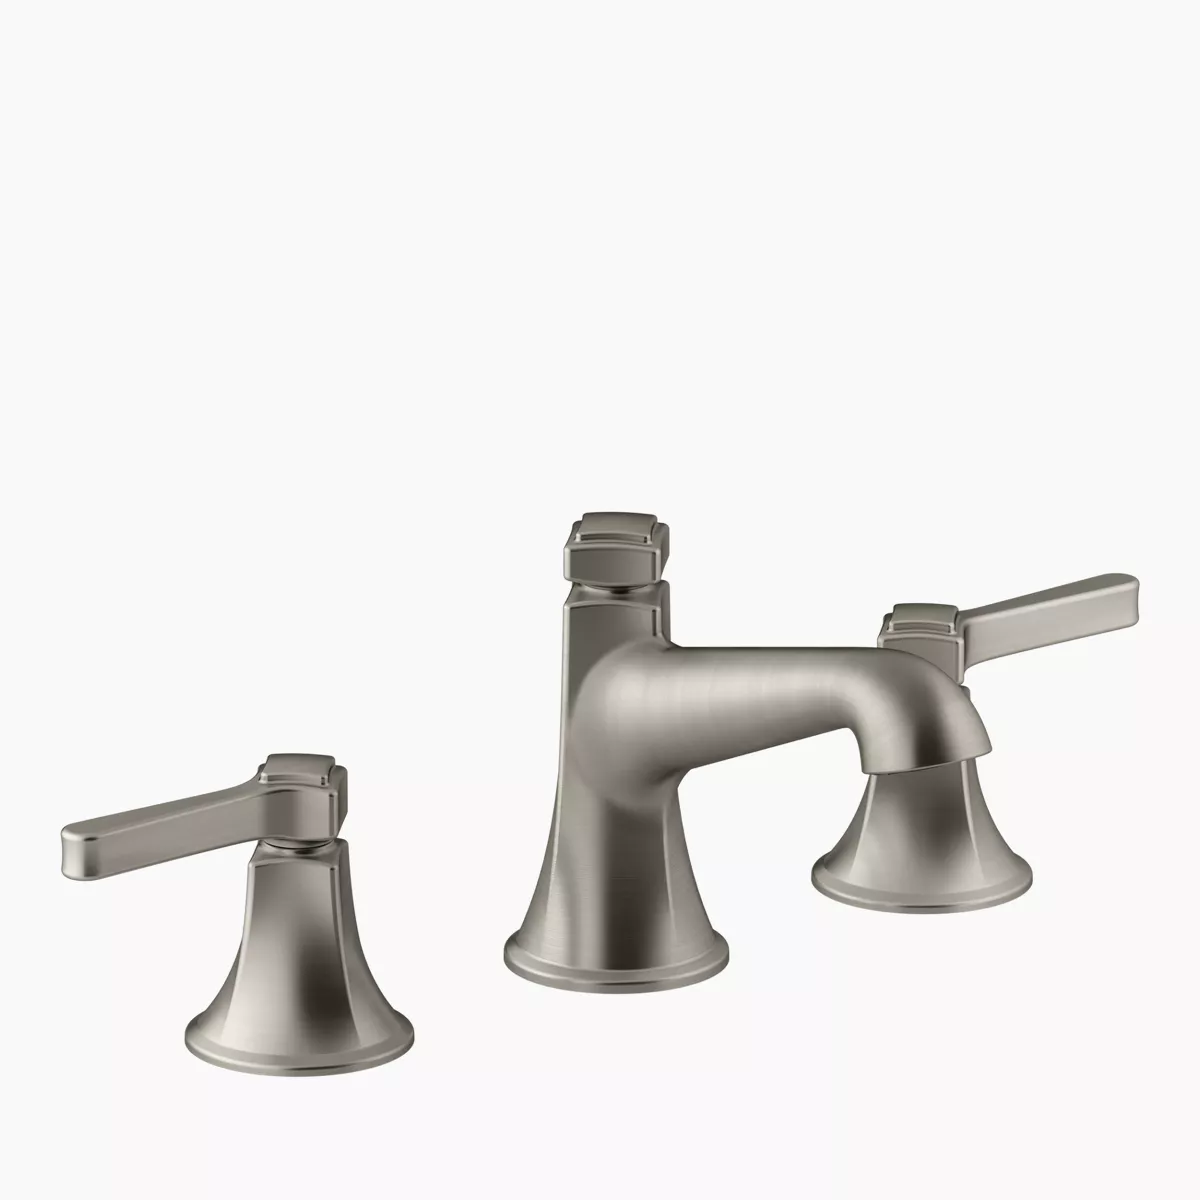 English Trellis Design on Caxton Undermount Sink | K-14195-FL | KOHLER